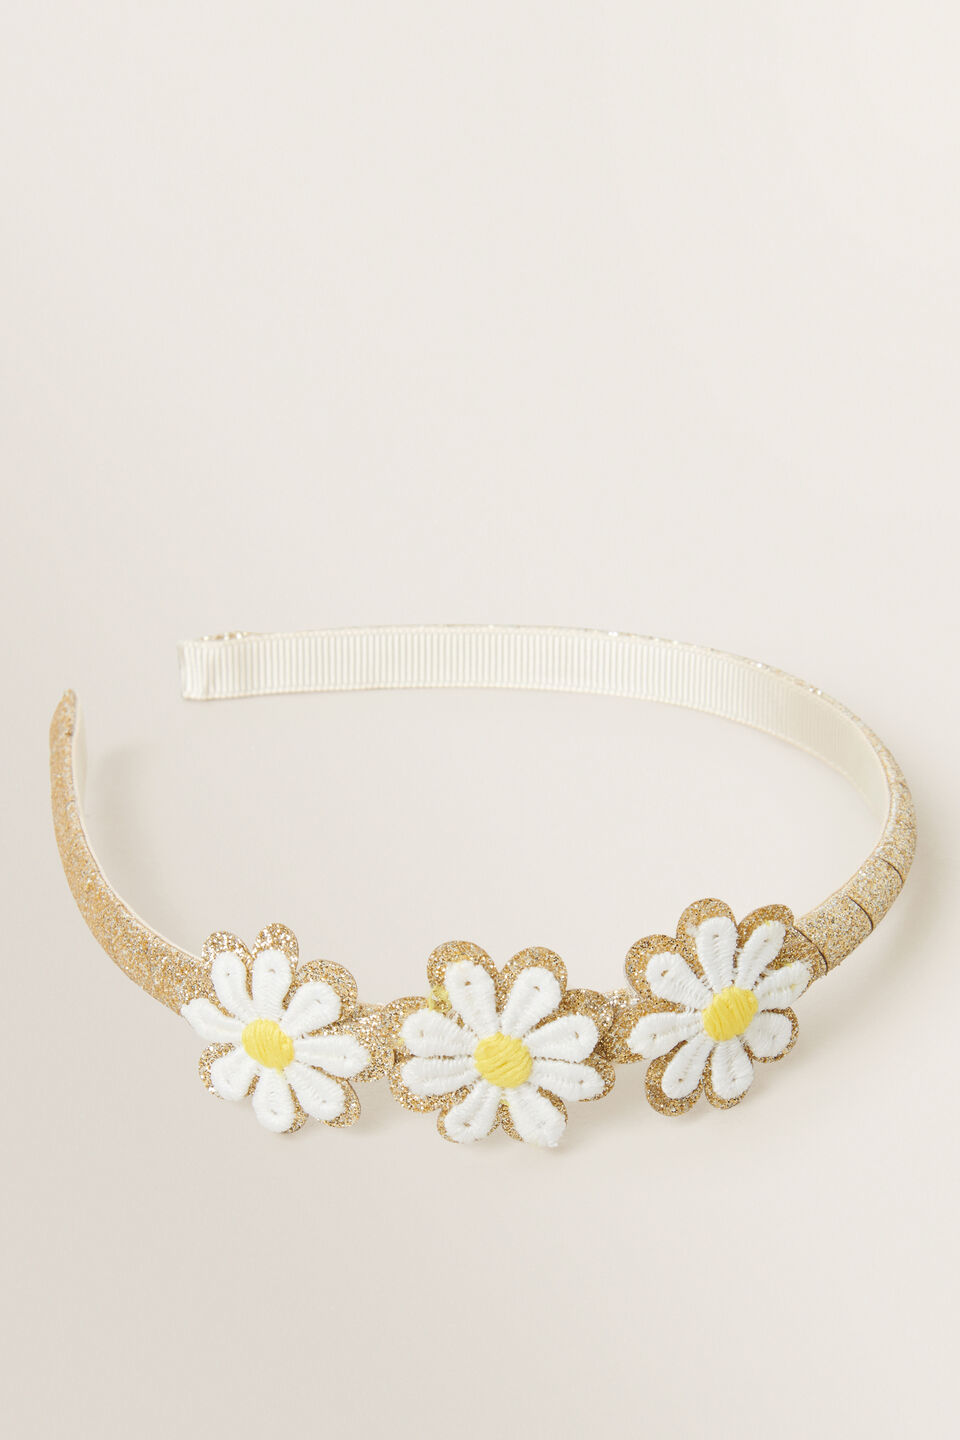 Embroidered Daisy Headband  